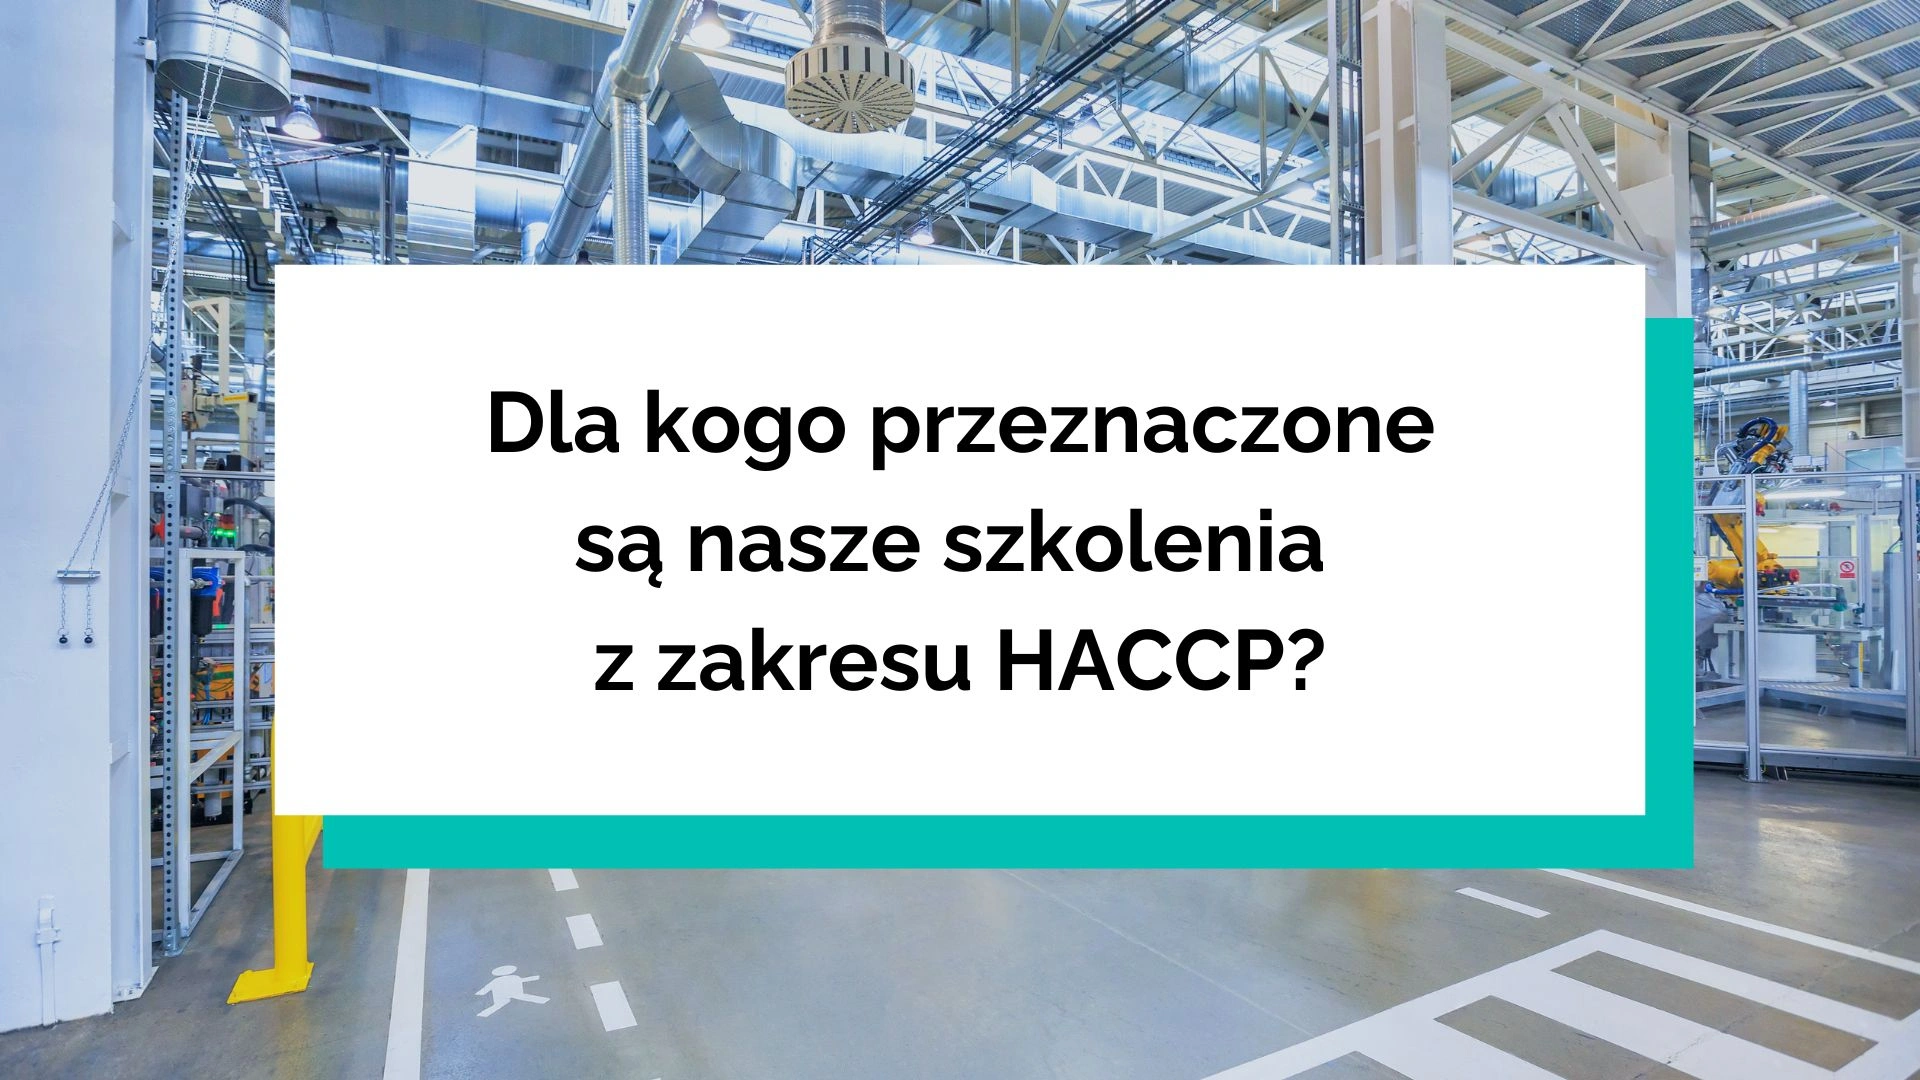 Dla kogo są przeznaczone szkolenia HACCP?